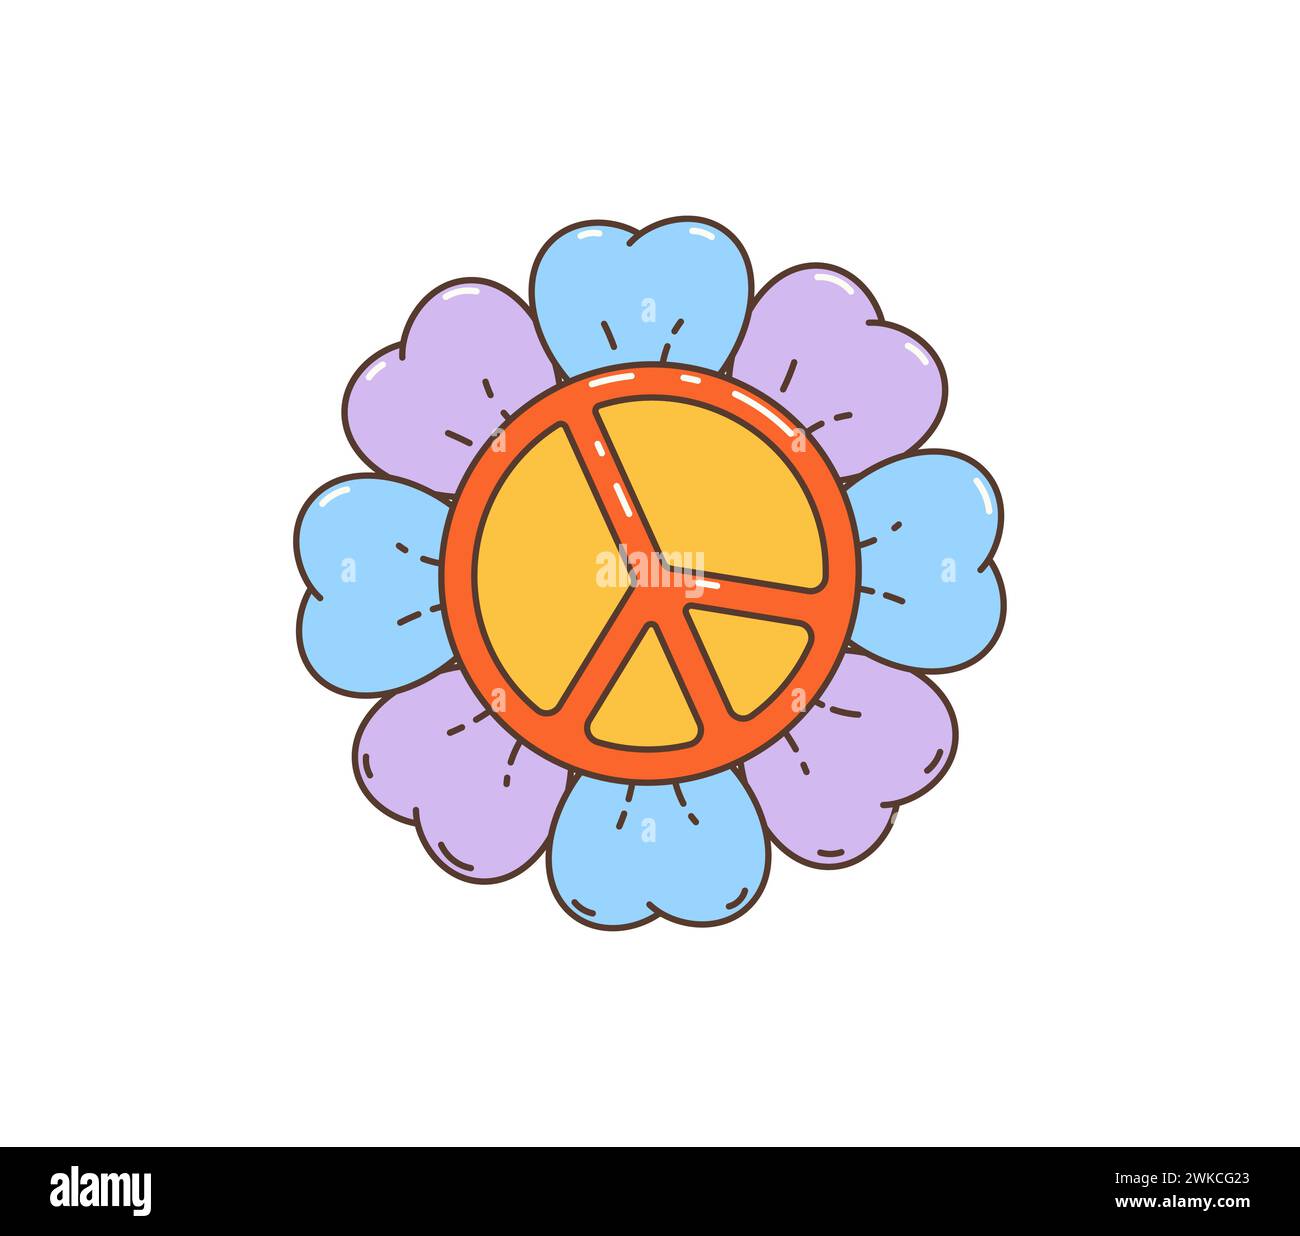 Simbolo di pace hippie retrò Cartoon. Il vivace e variopinto fiore psichedelico vettoriale isolato con emblema della pace racchiude l'essenza della cultura hippie degli anni '60 e '70 e del movimento pacifista Illustrazione Vettoriale